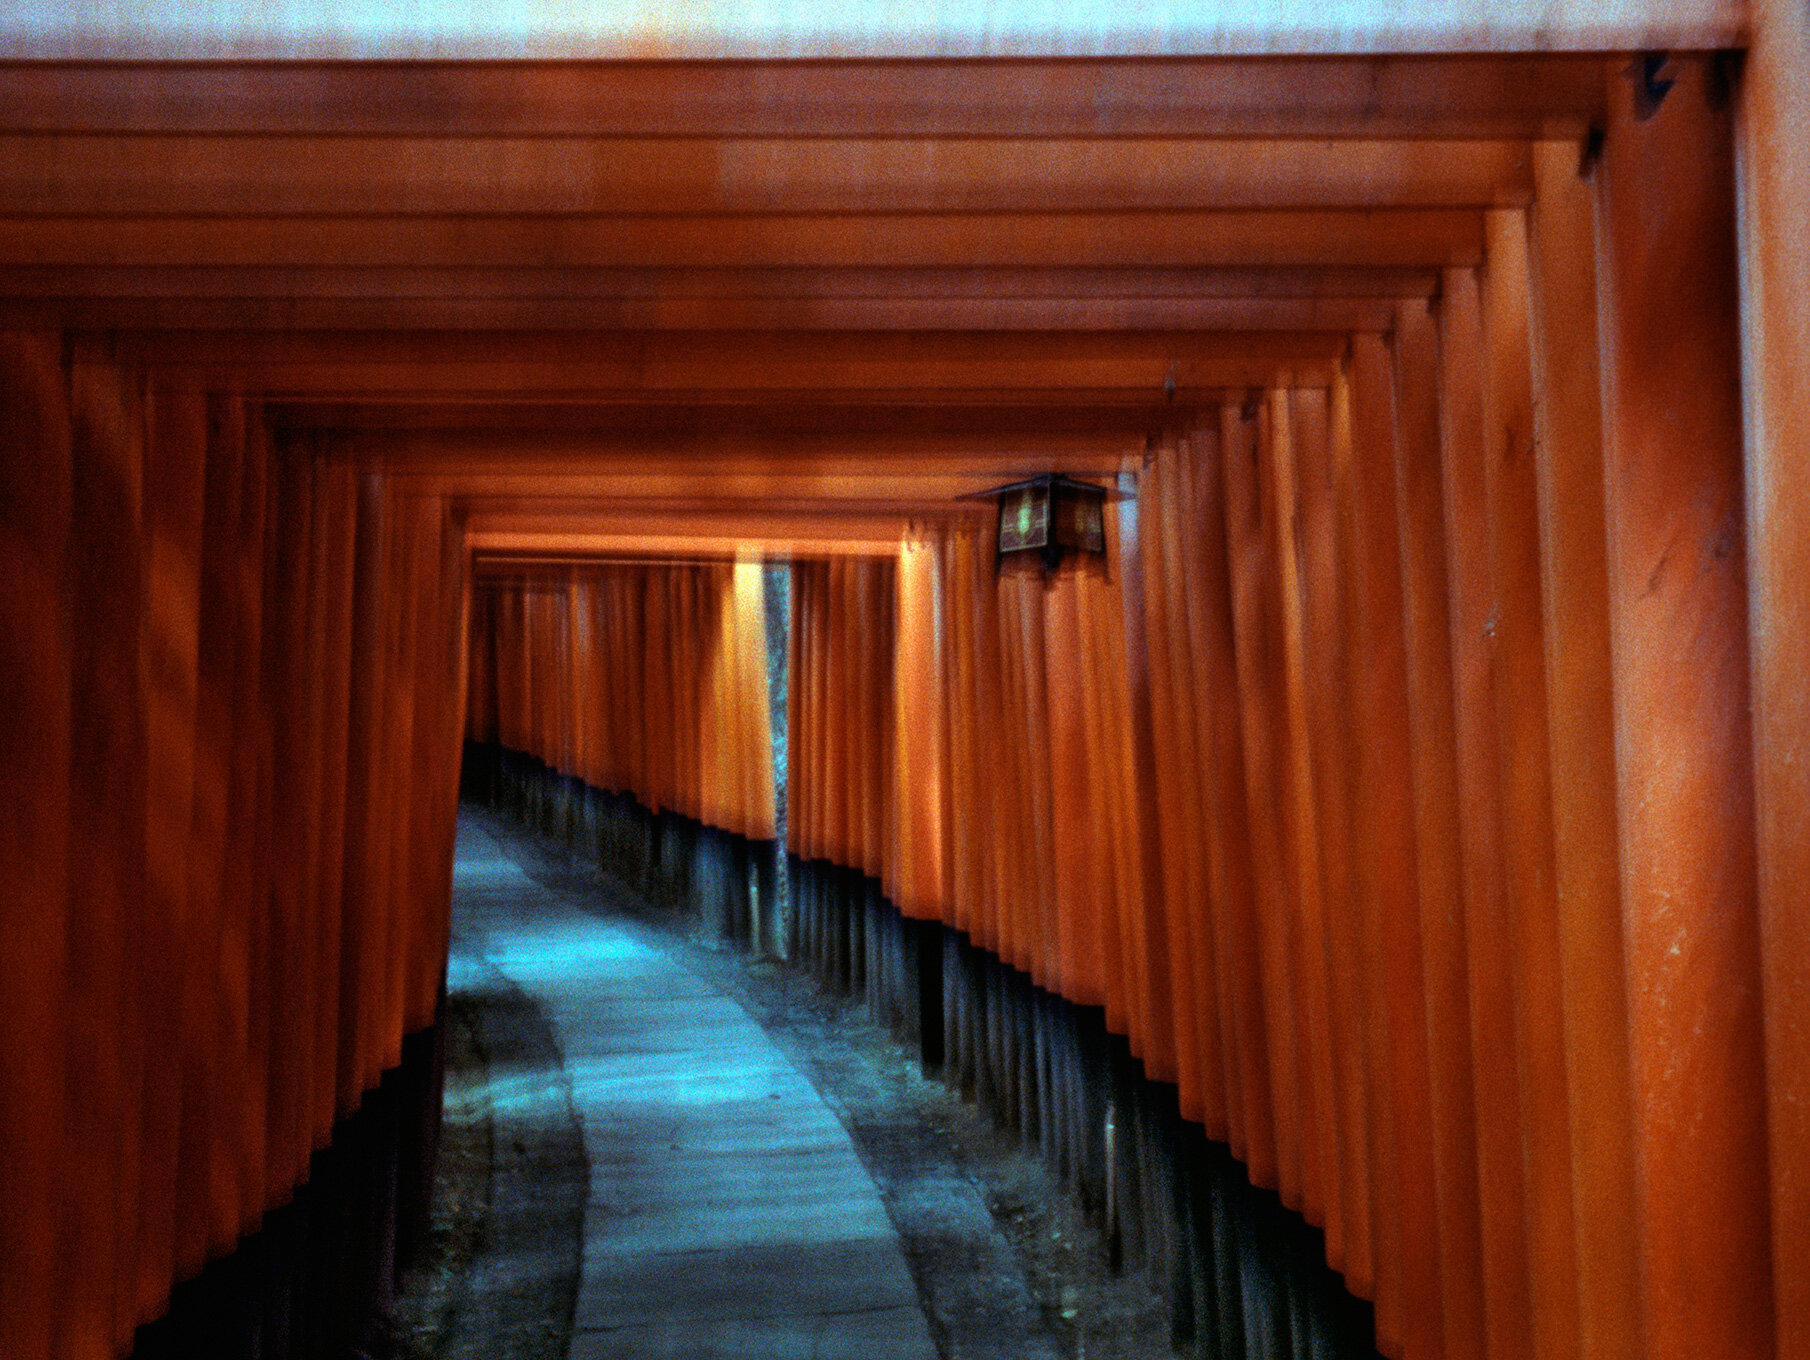   Fushimi Inari Shrine,  Fushimi, 2015  